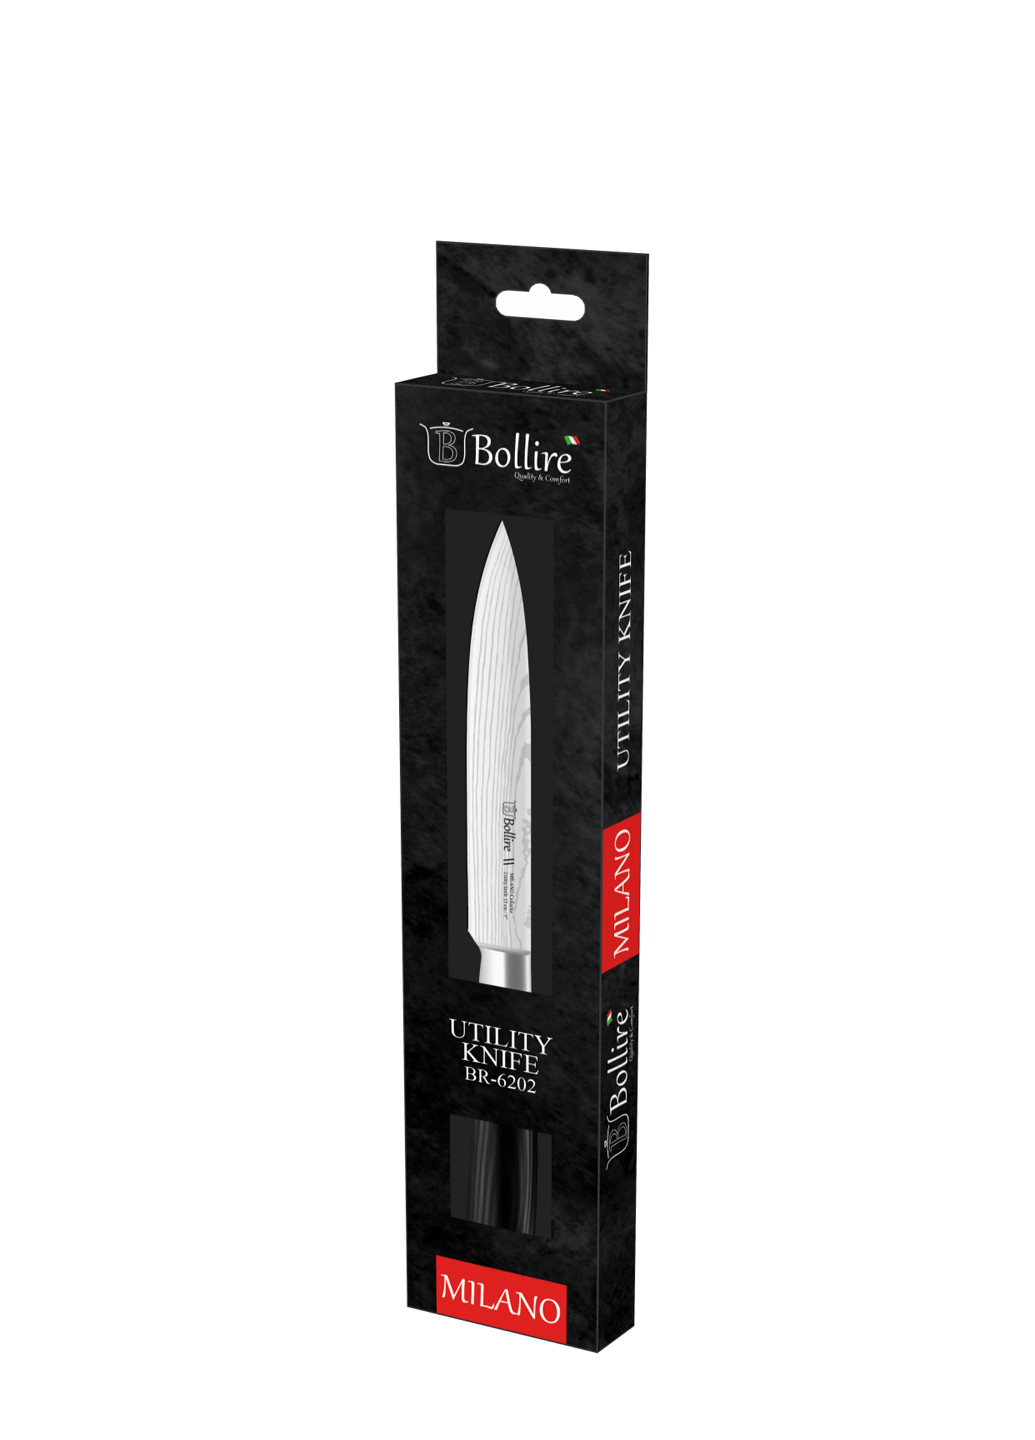 Нож универсальный Milano Bollire br-6202 (250197875)